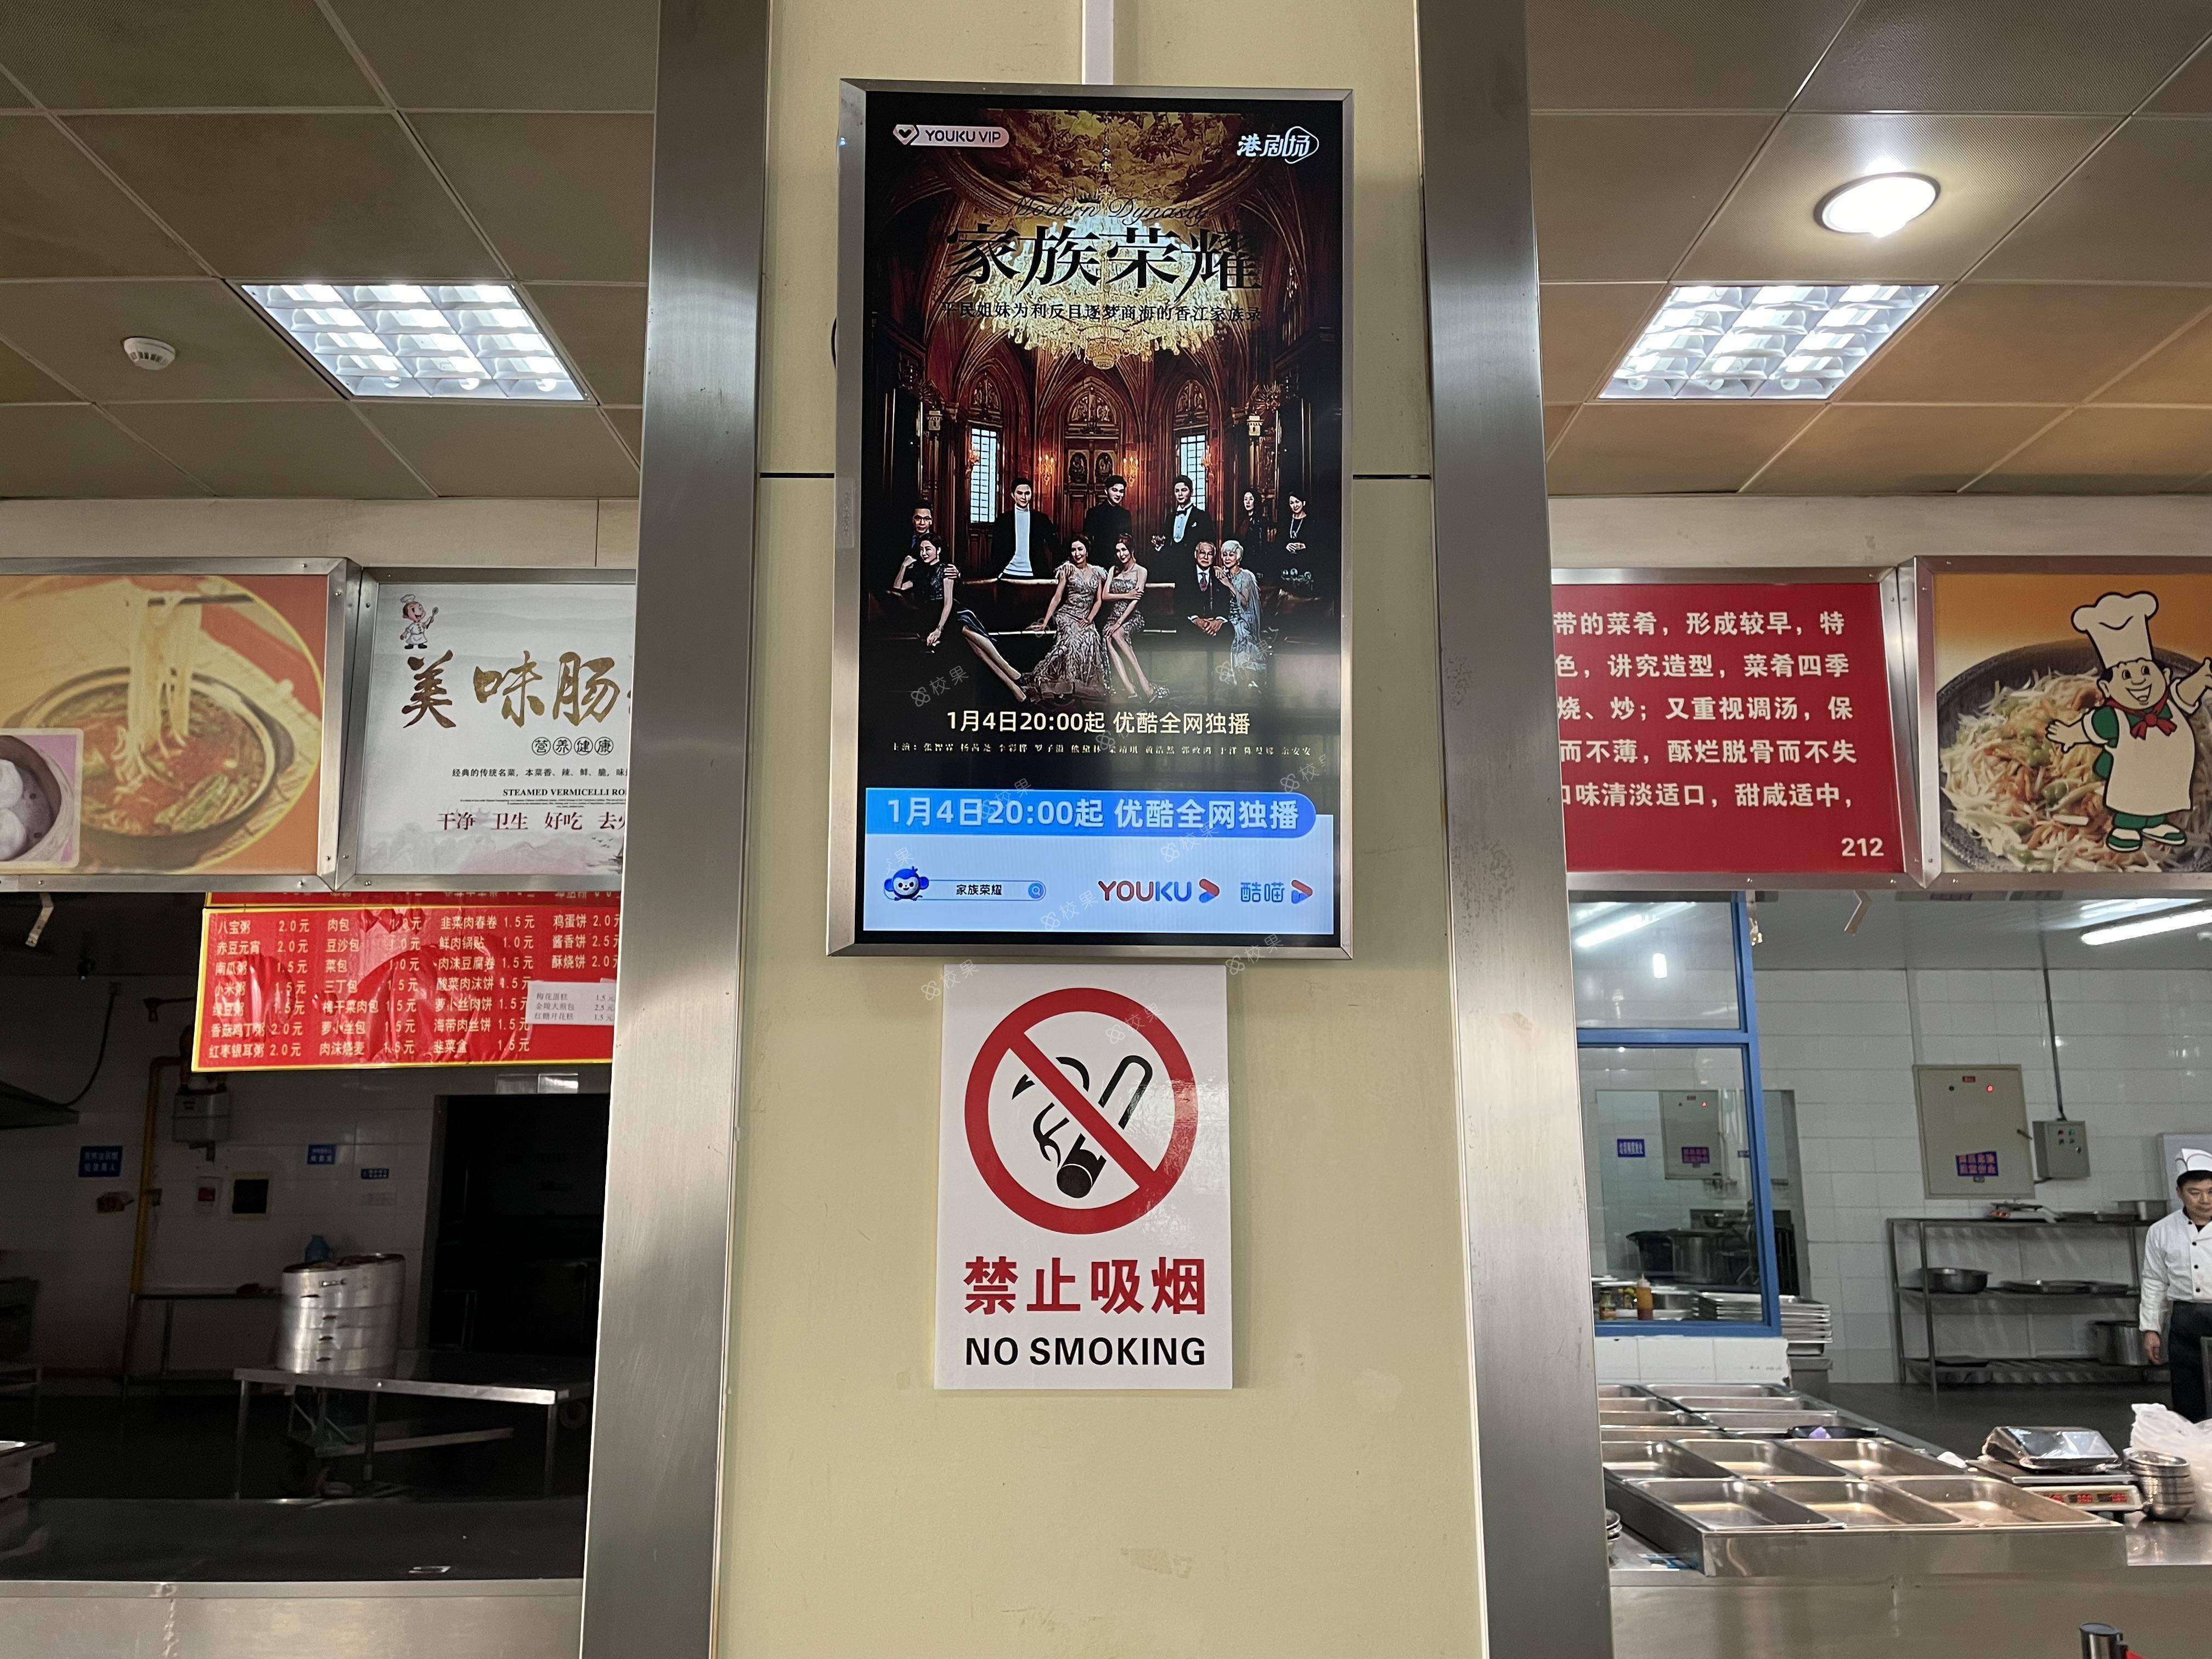 液晶屏广告 天津外国语大学